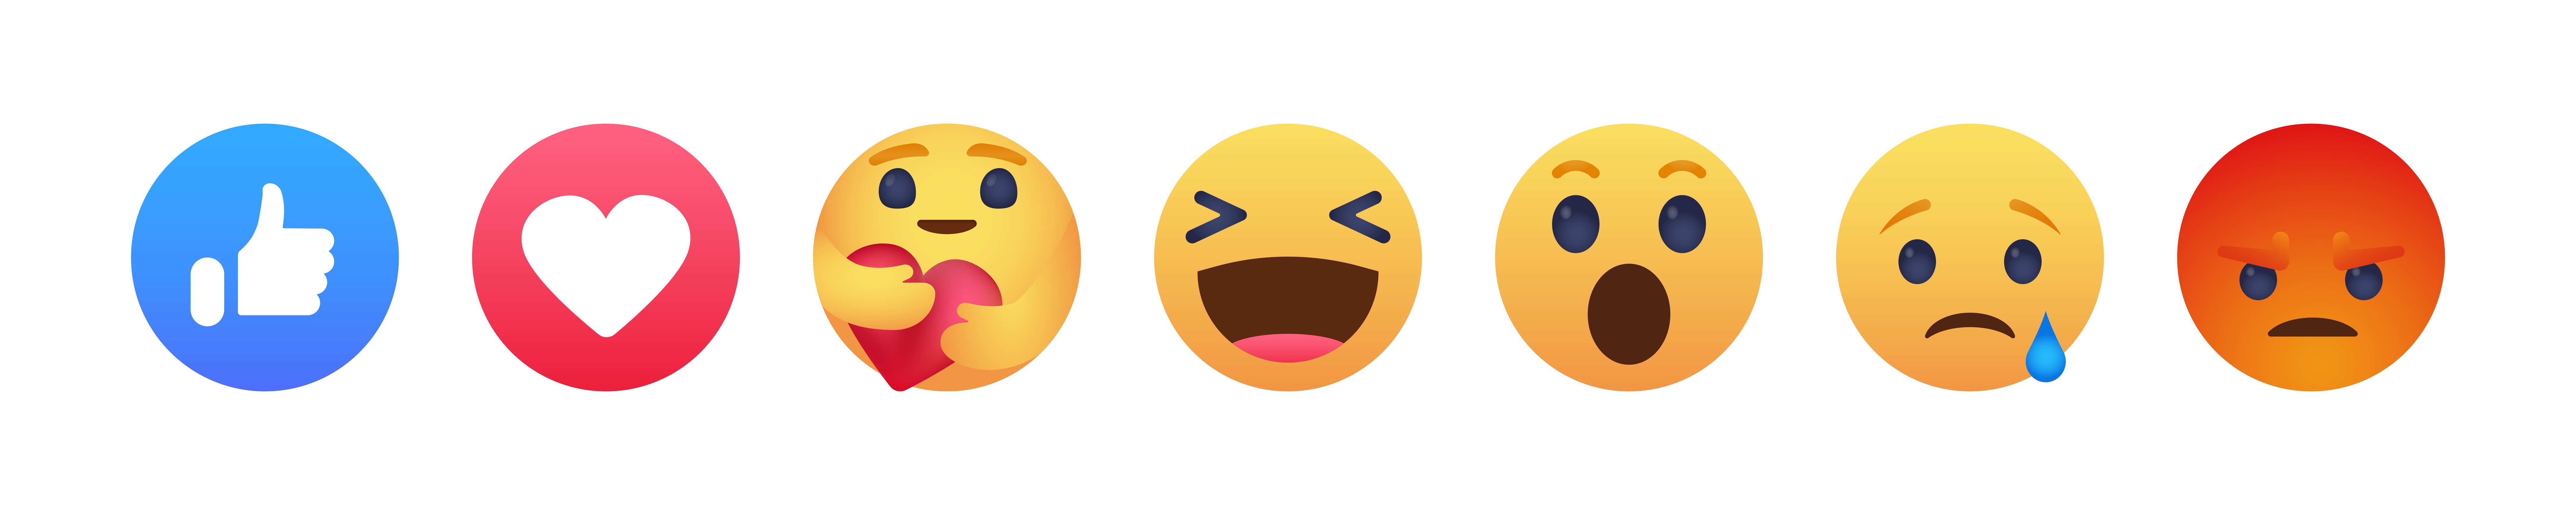 facebook-emoji-emotions-likes-banner-image